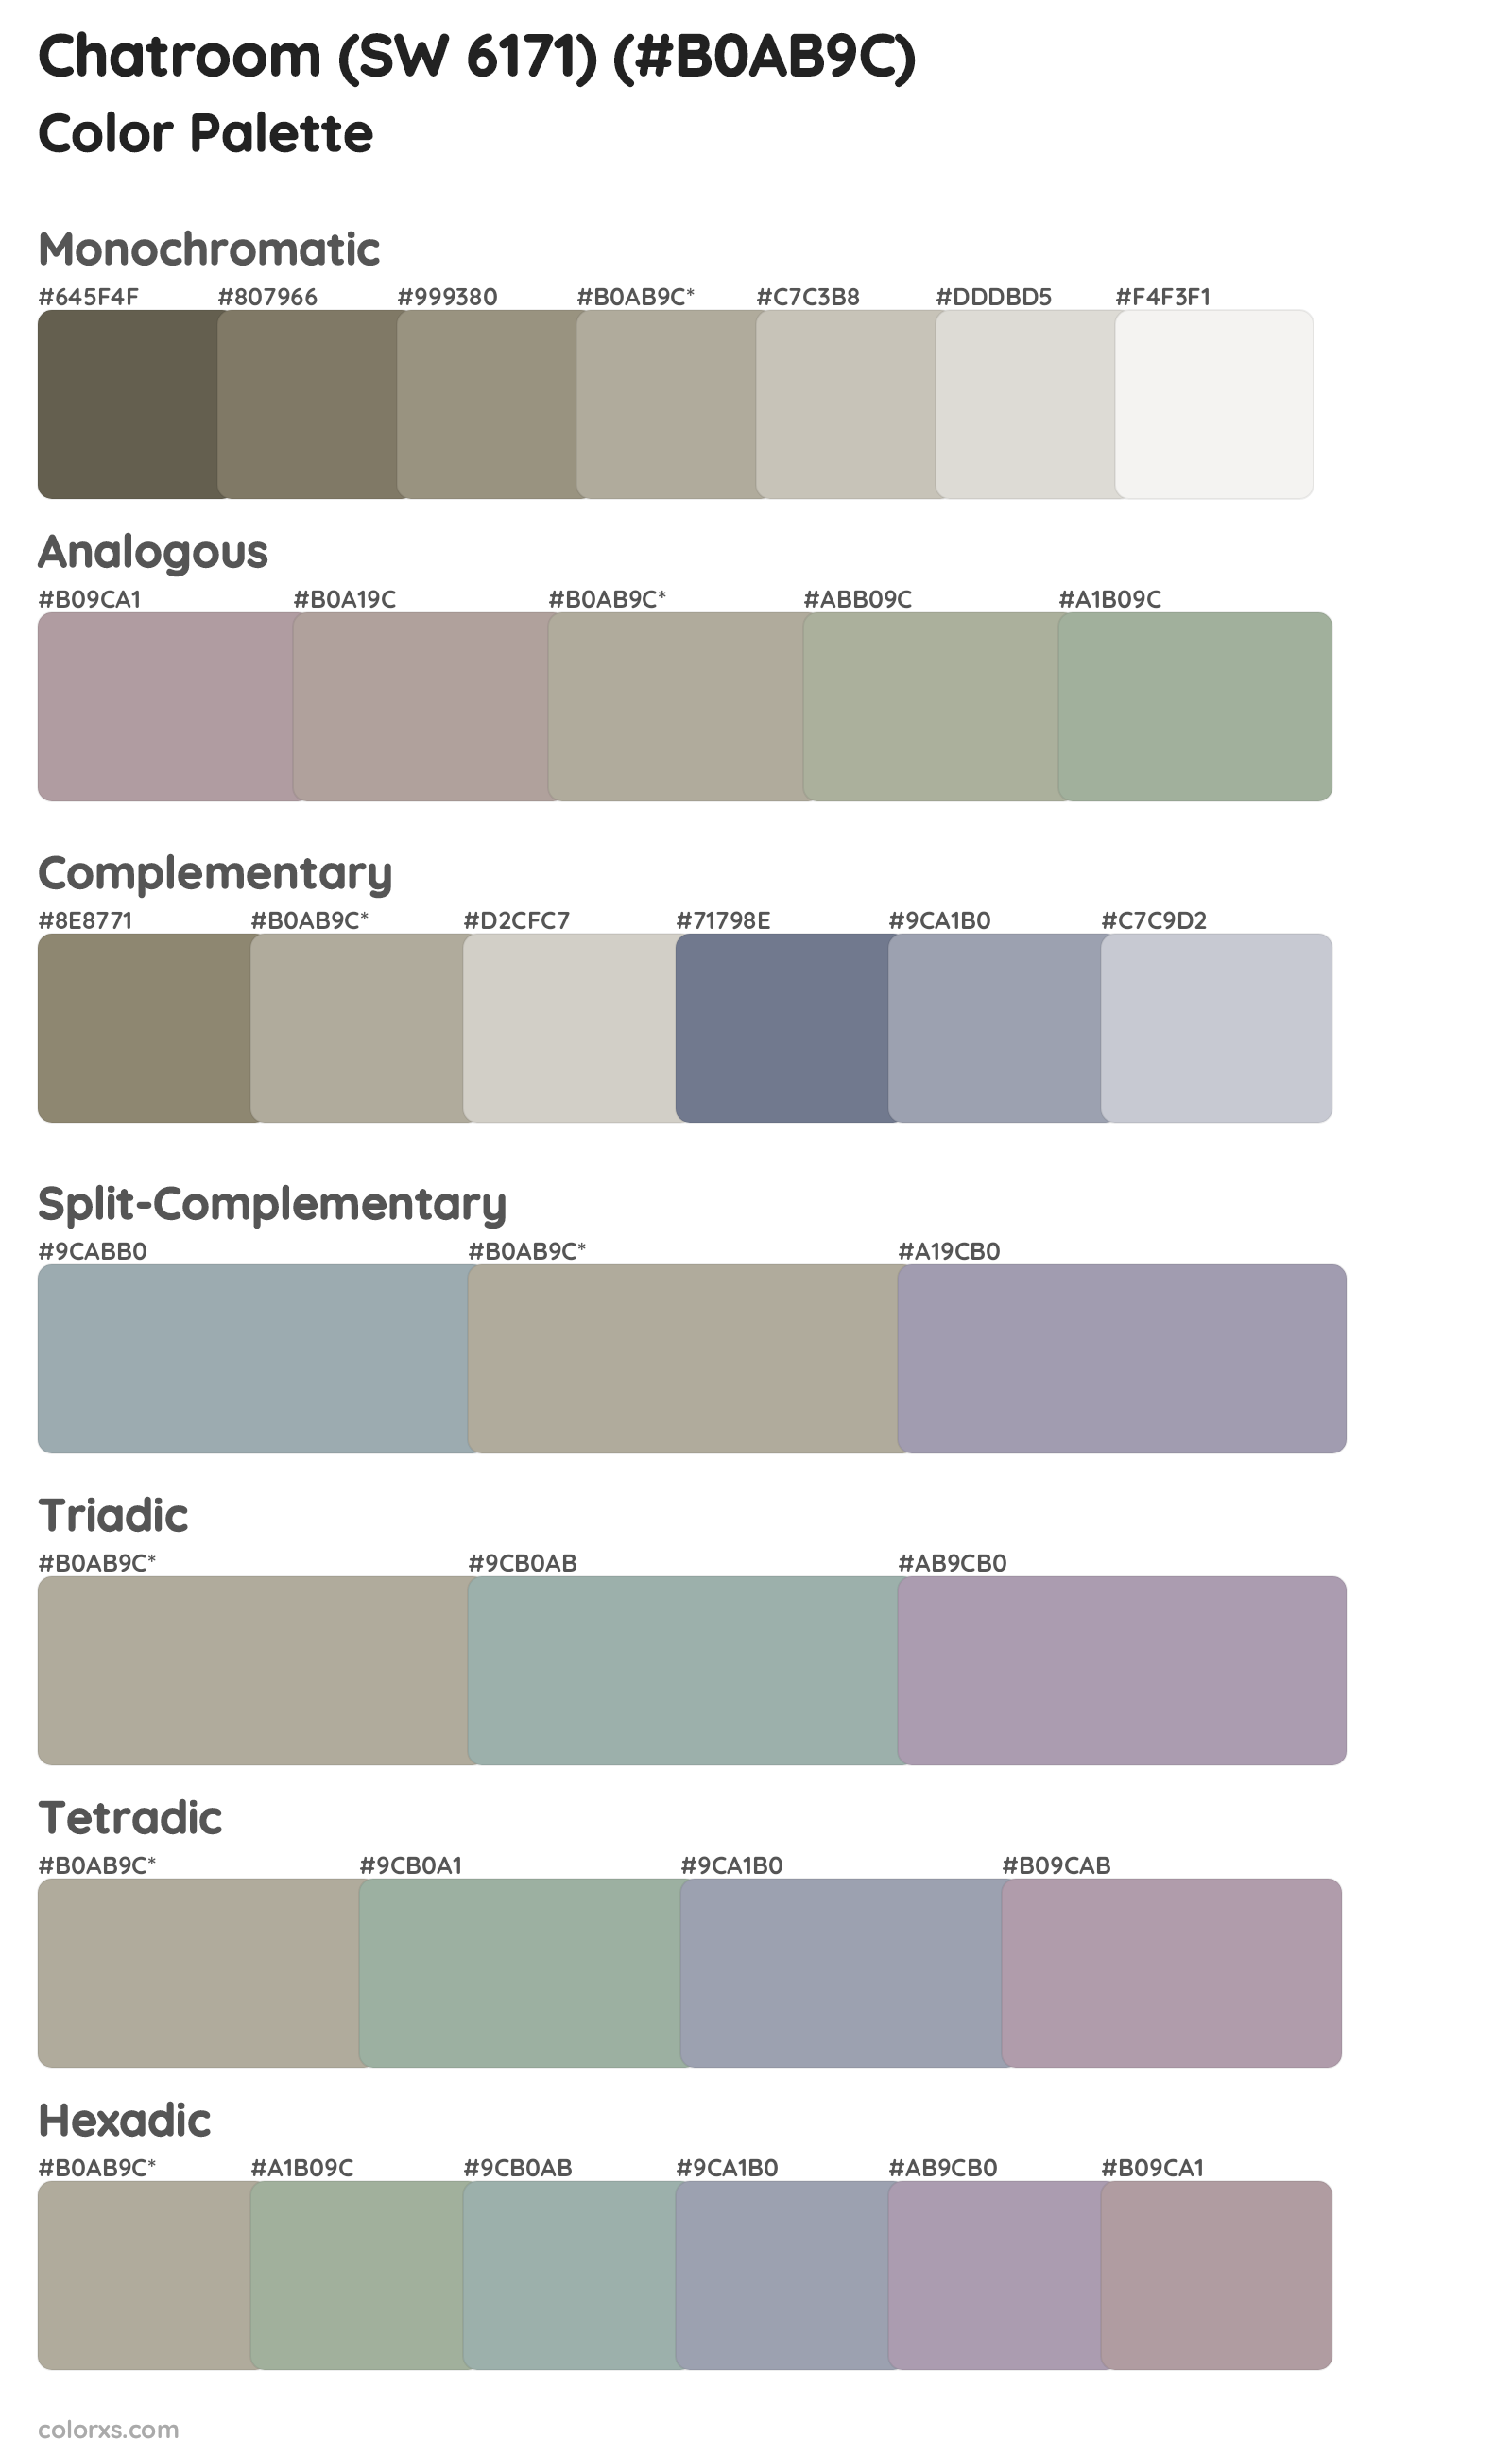 Chatroom (SW 6171) Color Scheme Palettes